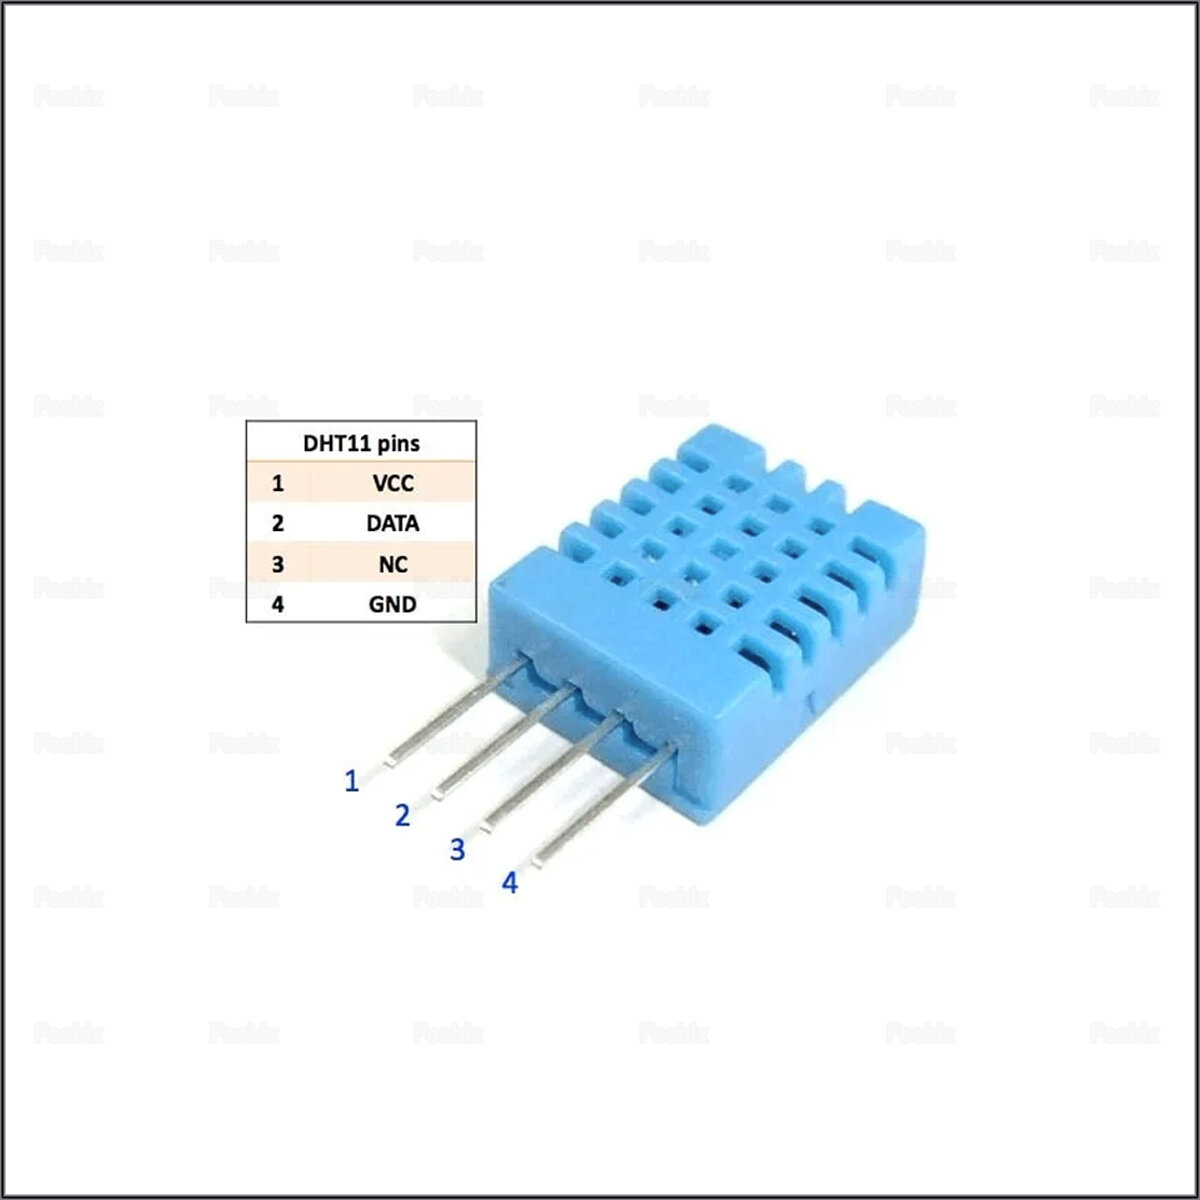 Датчик температуры и влажности DHT-11 Ардуино/Arduino DHT11